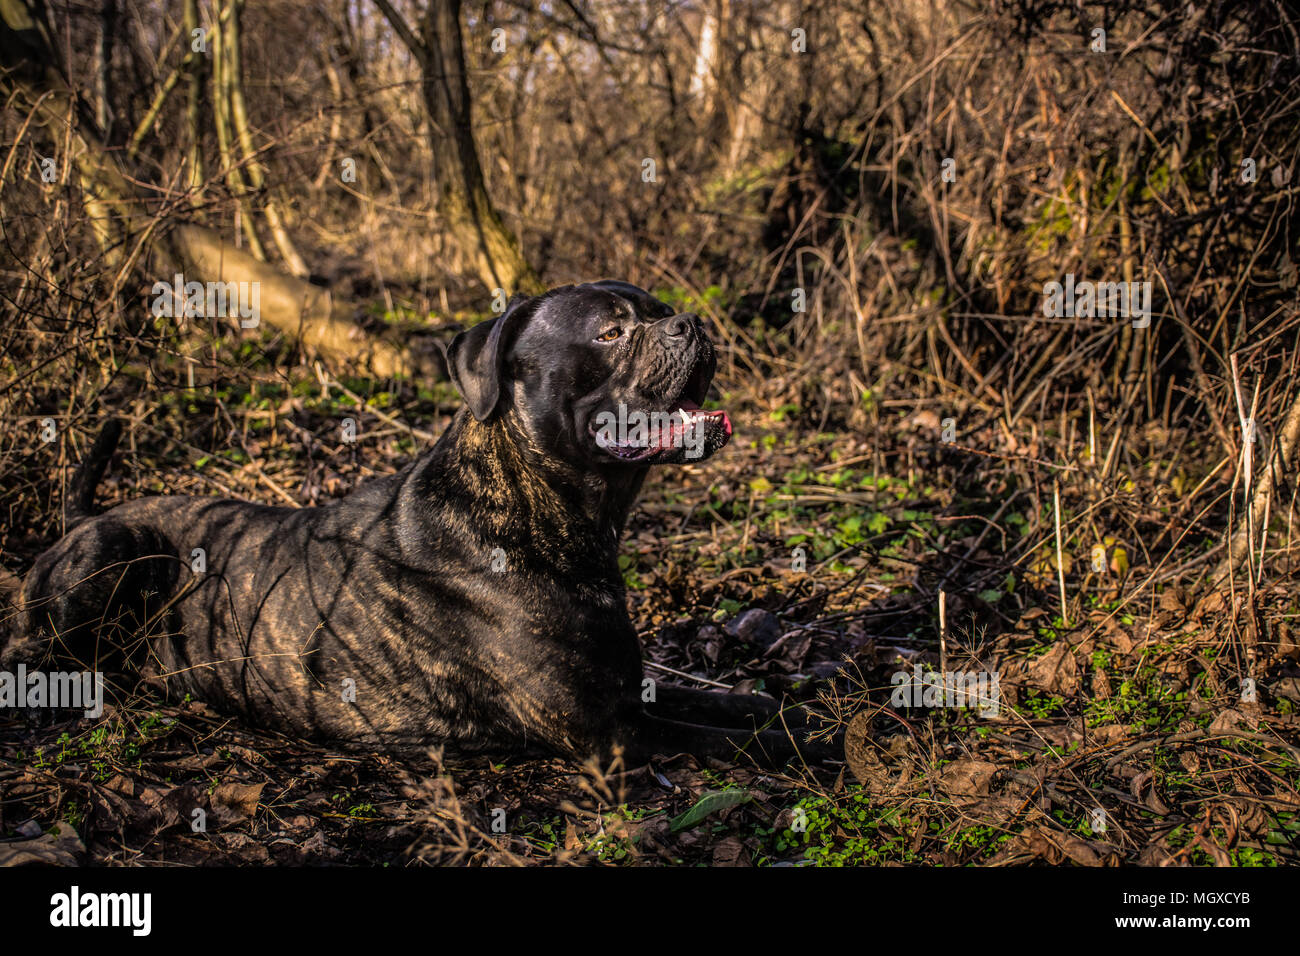 Gran perro negro cane corso (mastín italiano) tumbado y descansando en la naturaleza Foto de stock